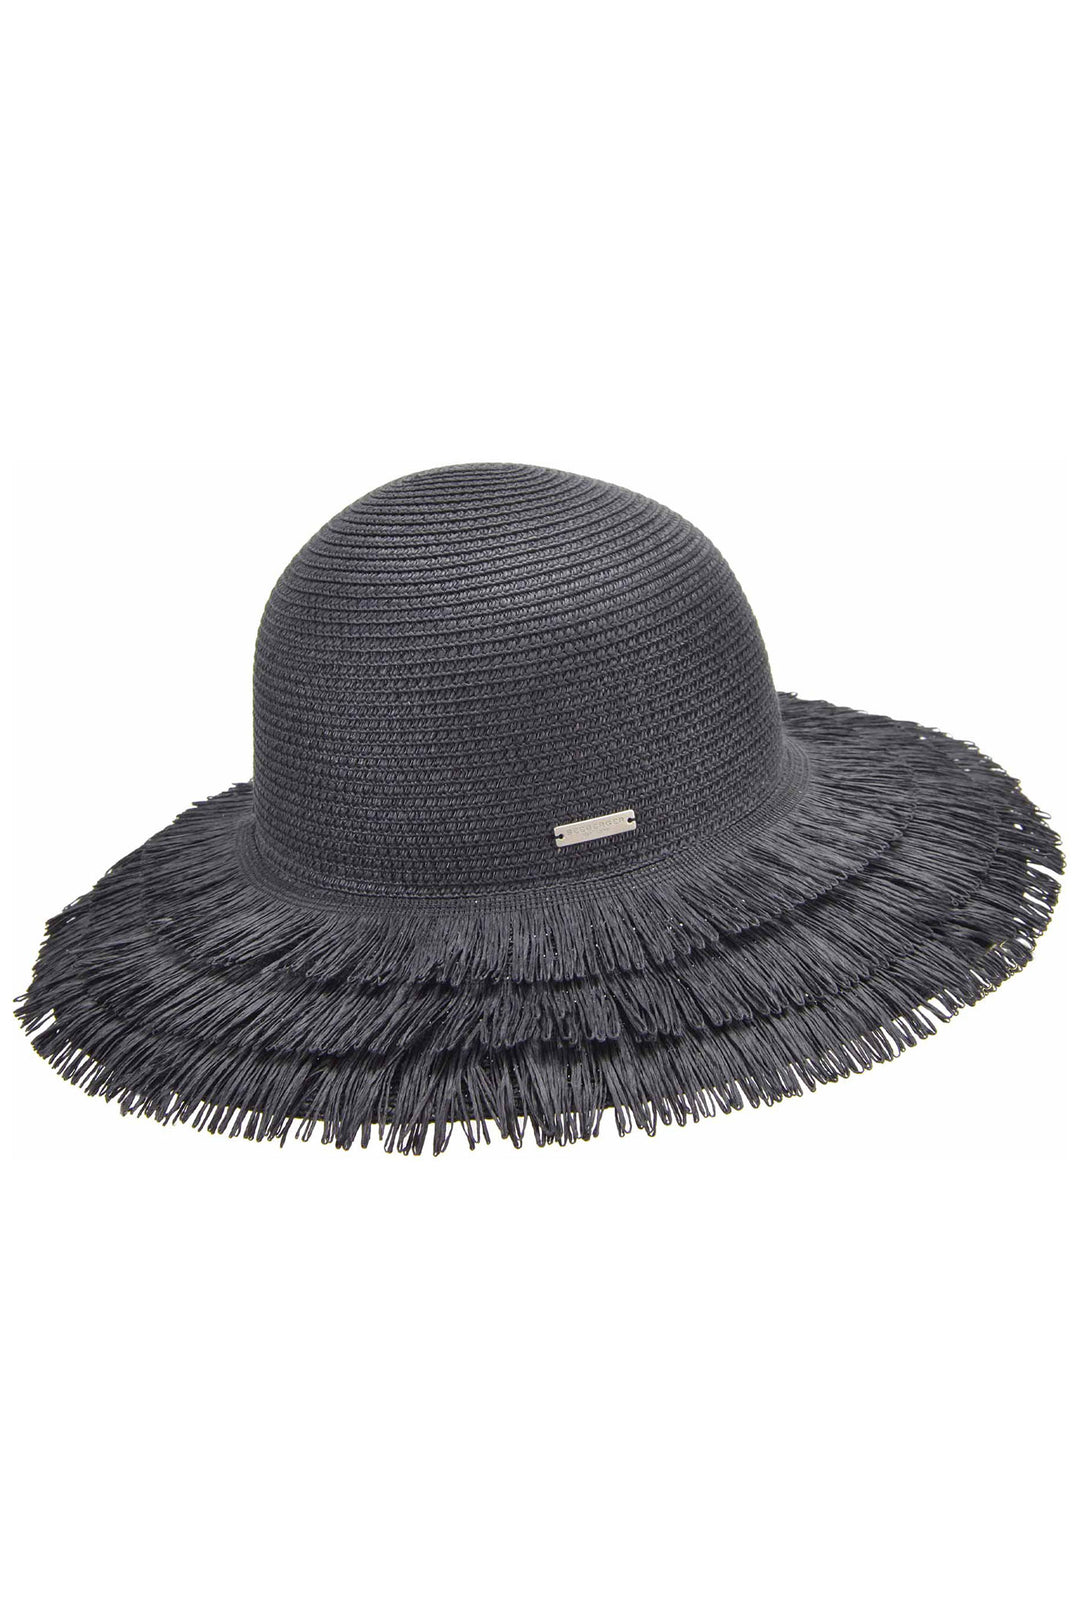 Seeberger 055456-00000 Black Paperbraid Floppy Hat